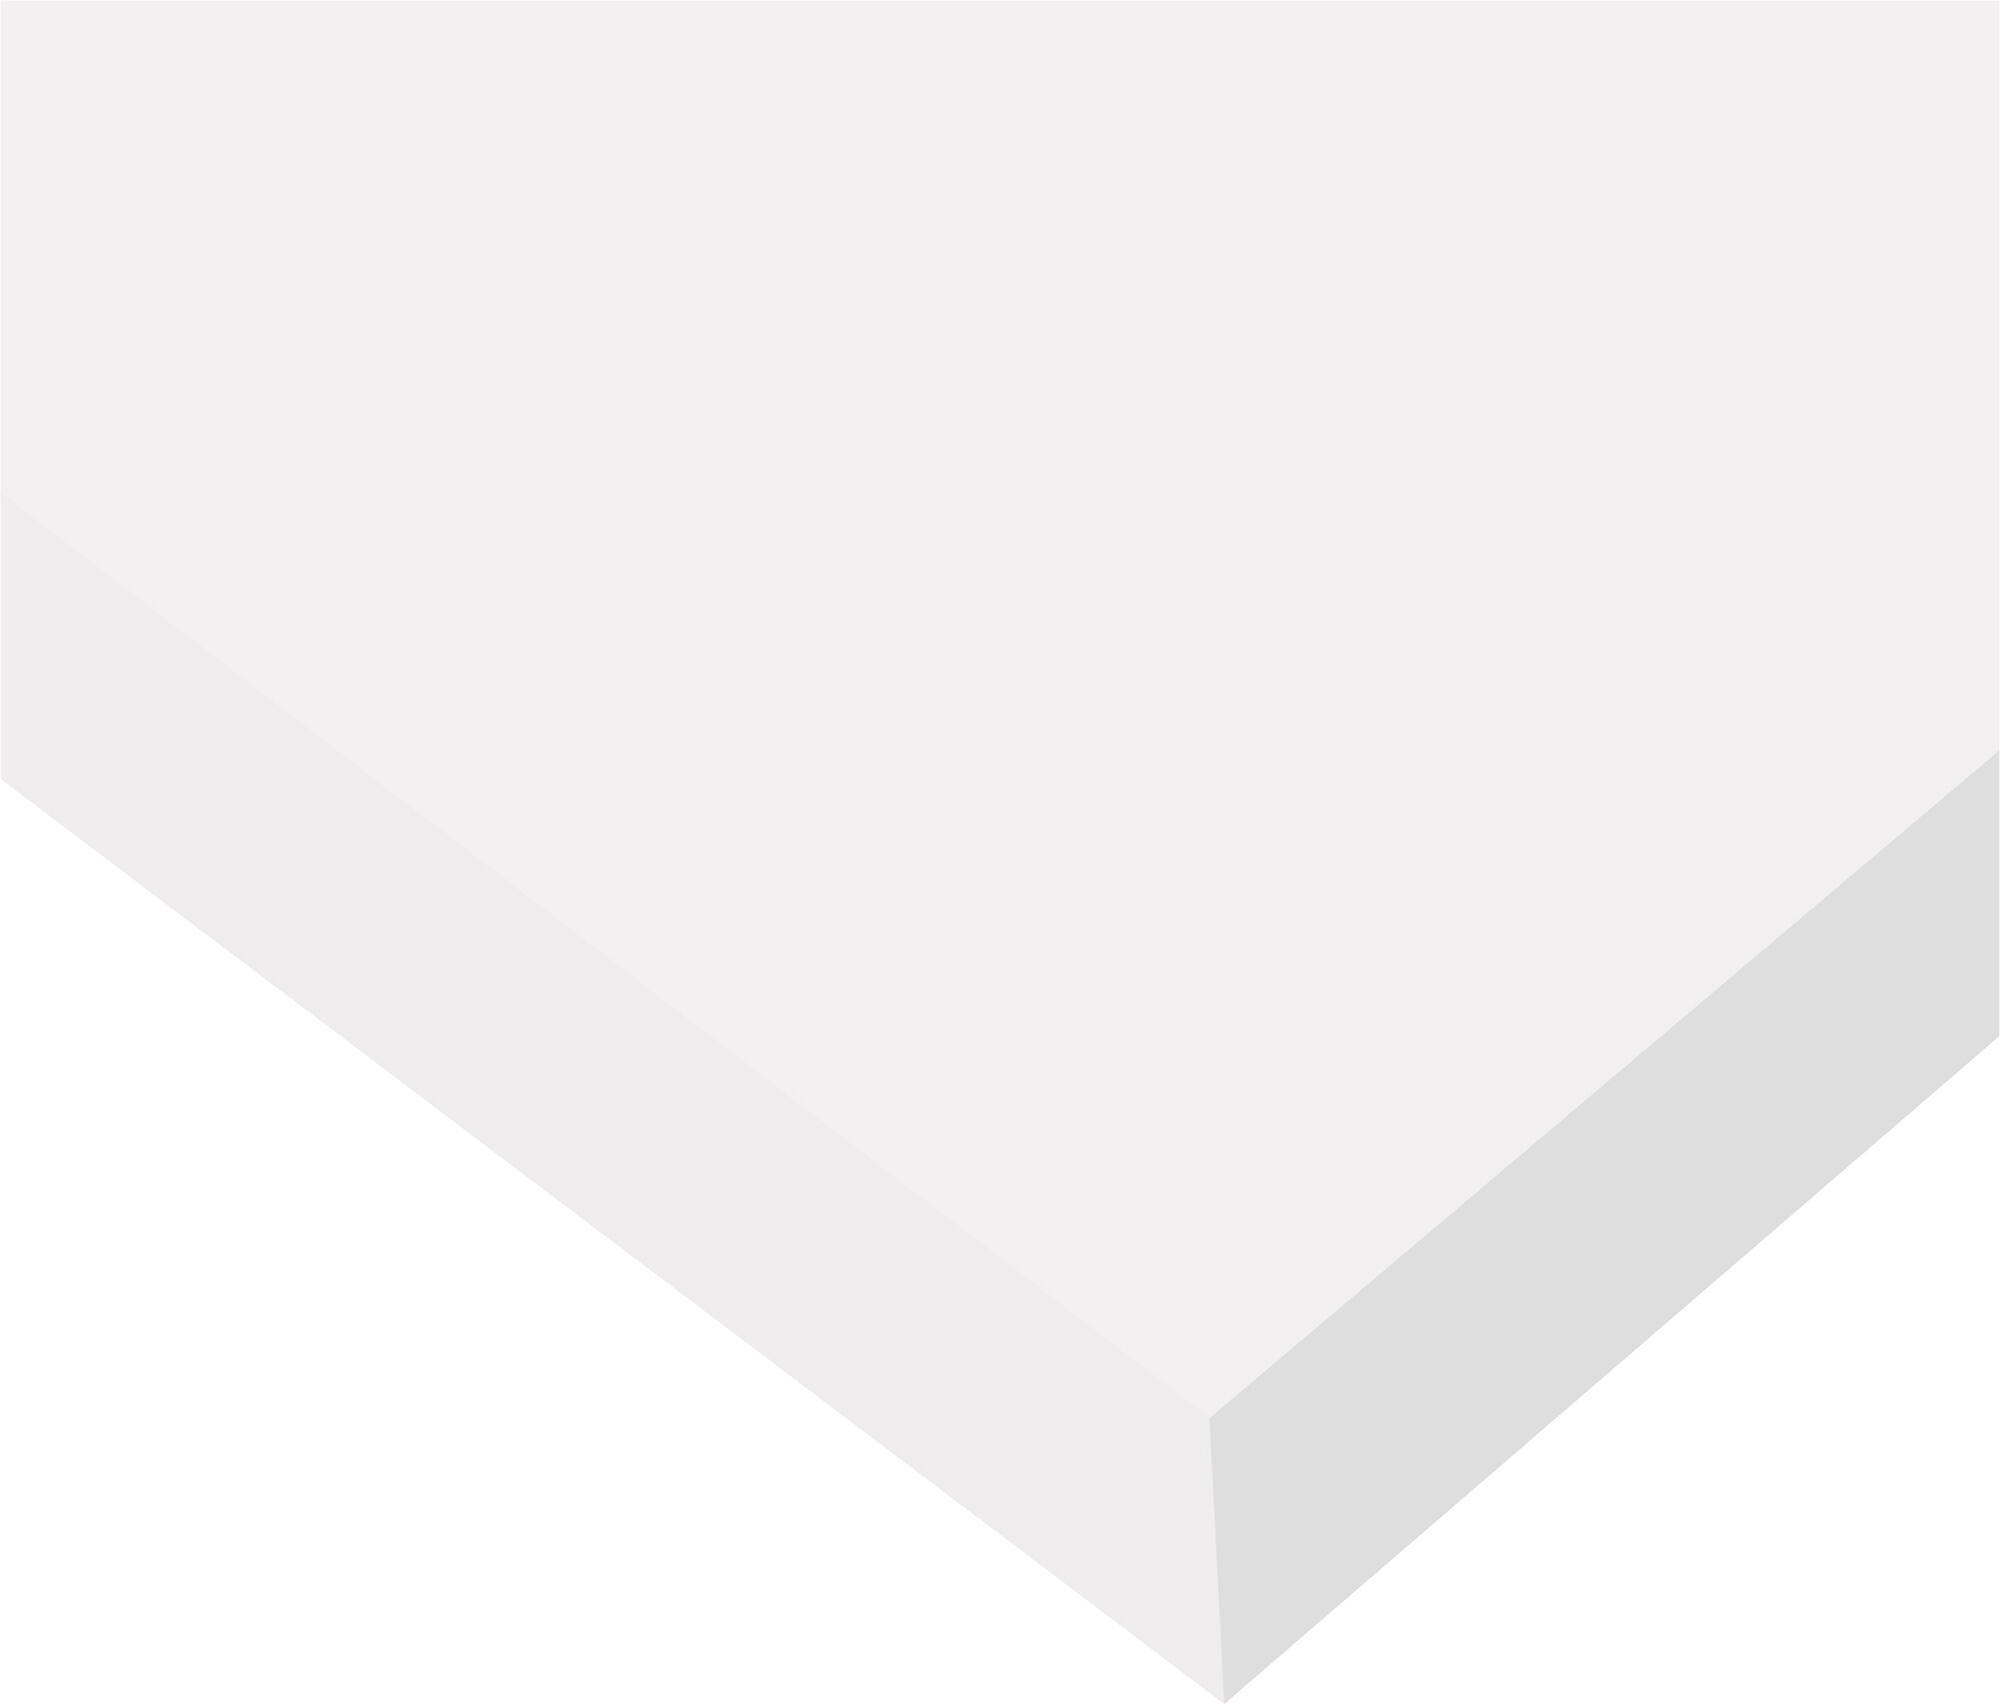 Tapa mesa aglomerado color blanco de 140x68.5x2.5cm